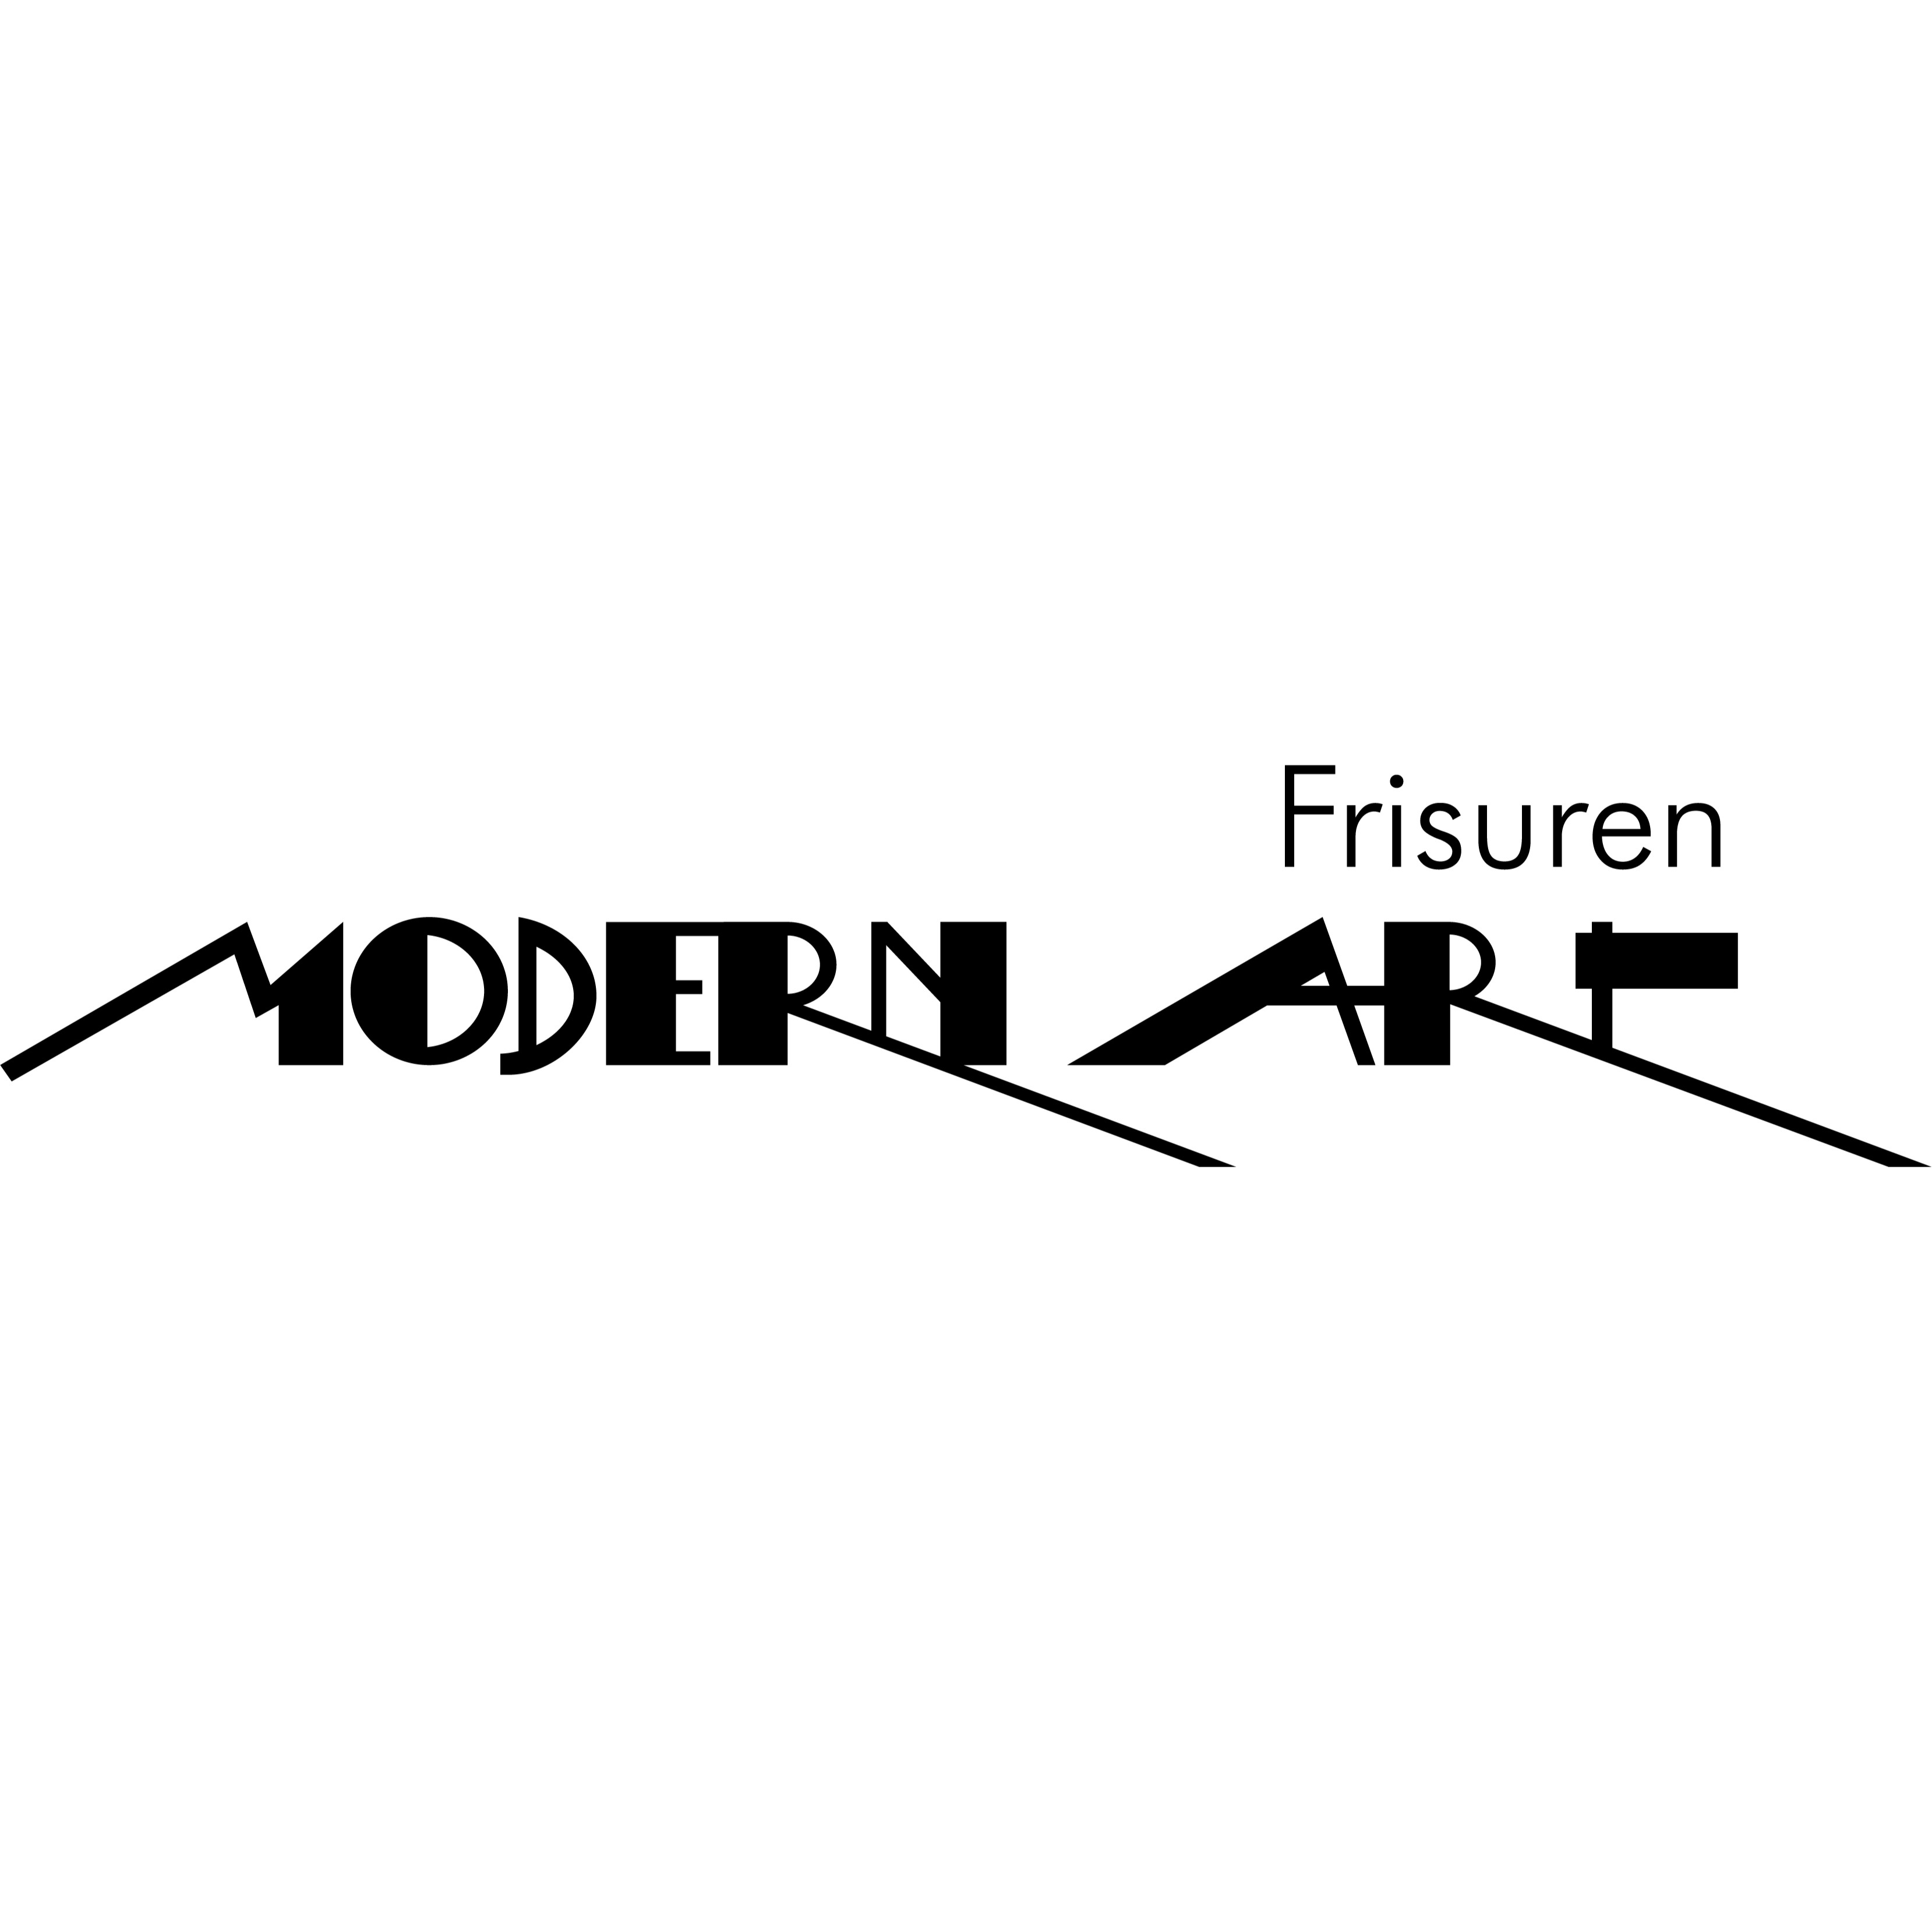 Frisuren Modern Art  